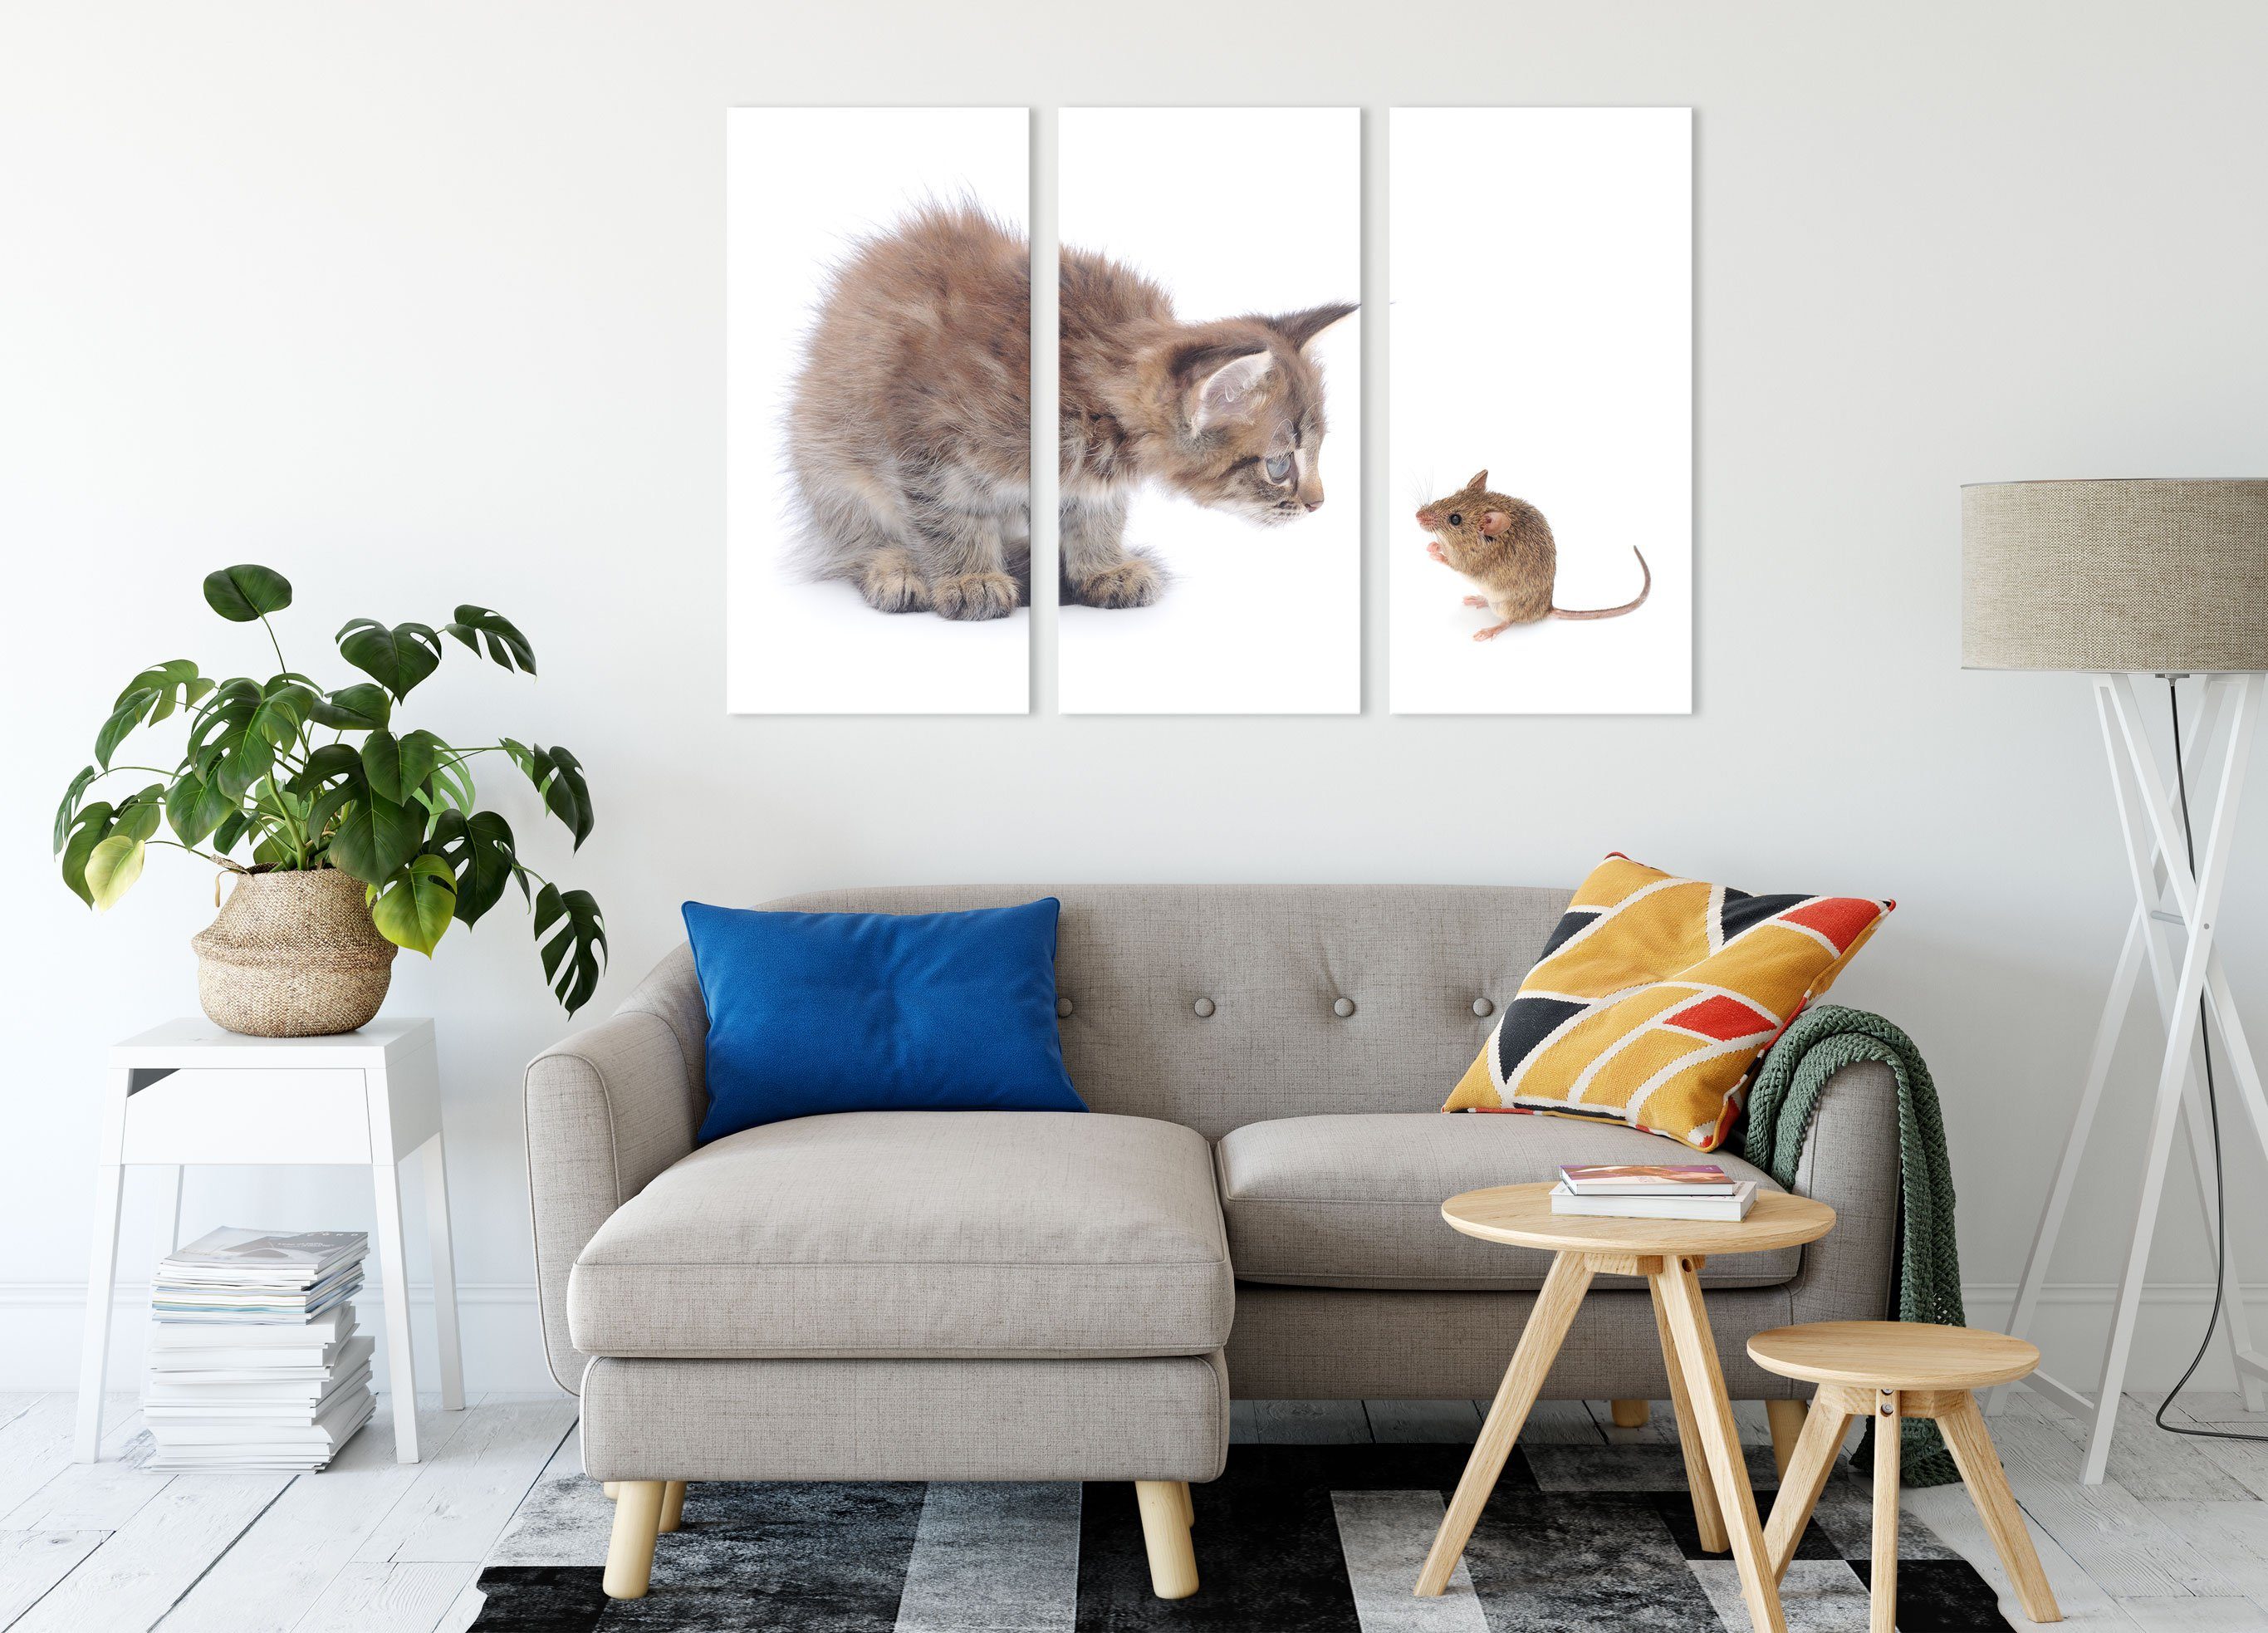 Leinwandbild (120x80cm) Leinwandbild Katze bespannt, Zackenaufhänger fertig Freunde, (1 Katze und 3Teiler St), und Freunde Maus Maus Pixxprint inkl.